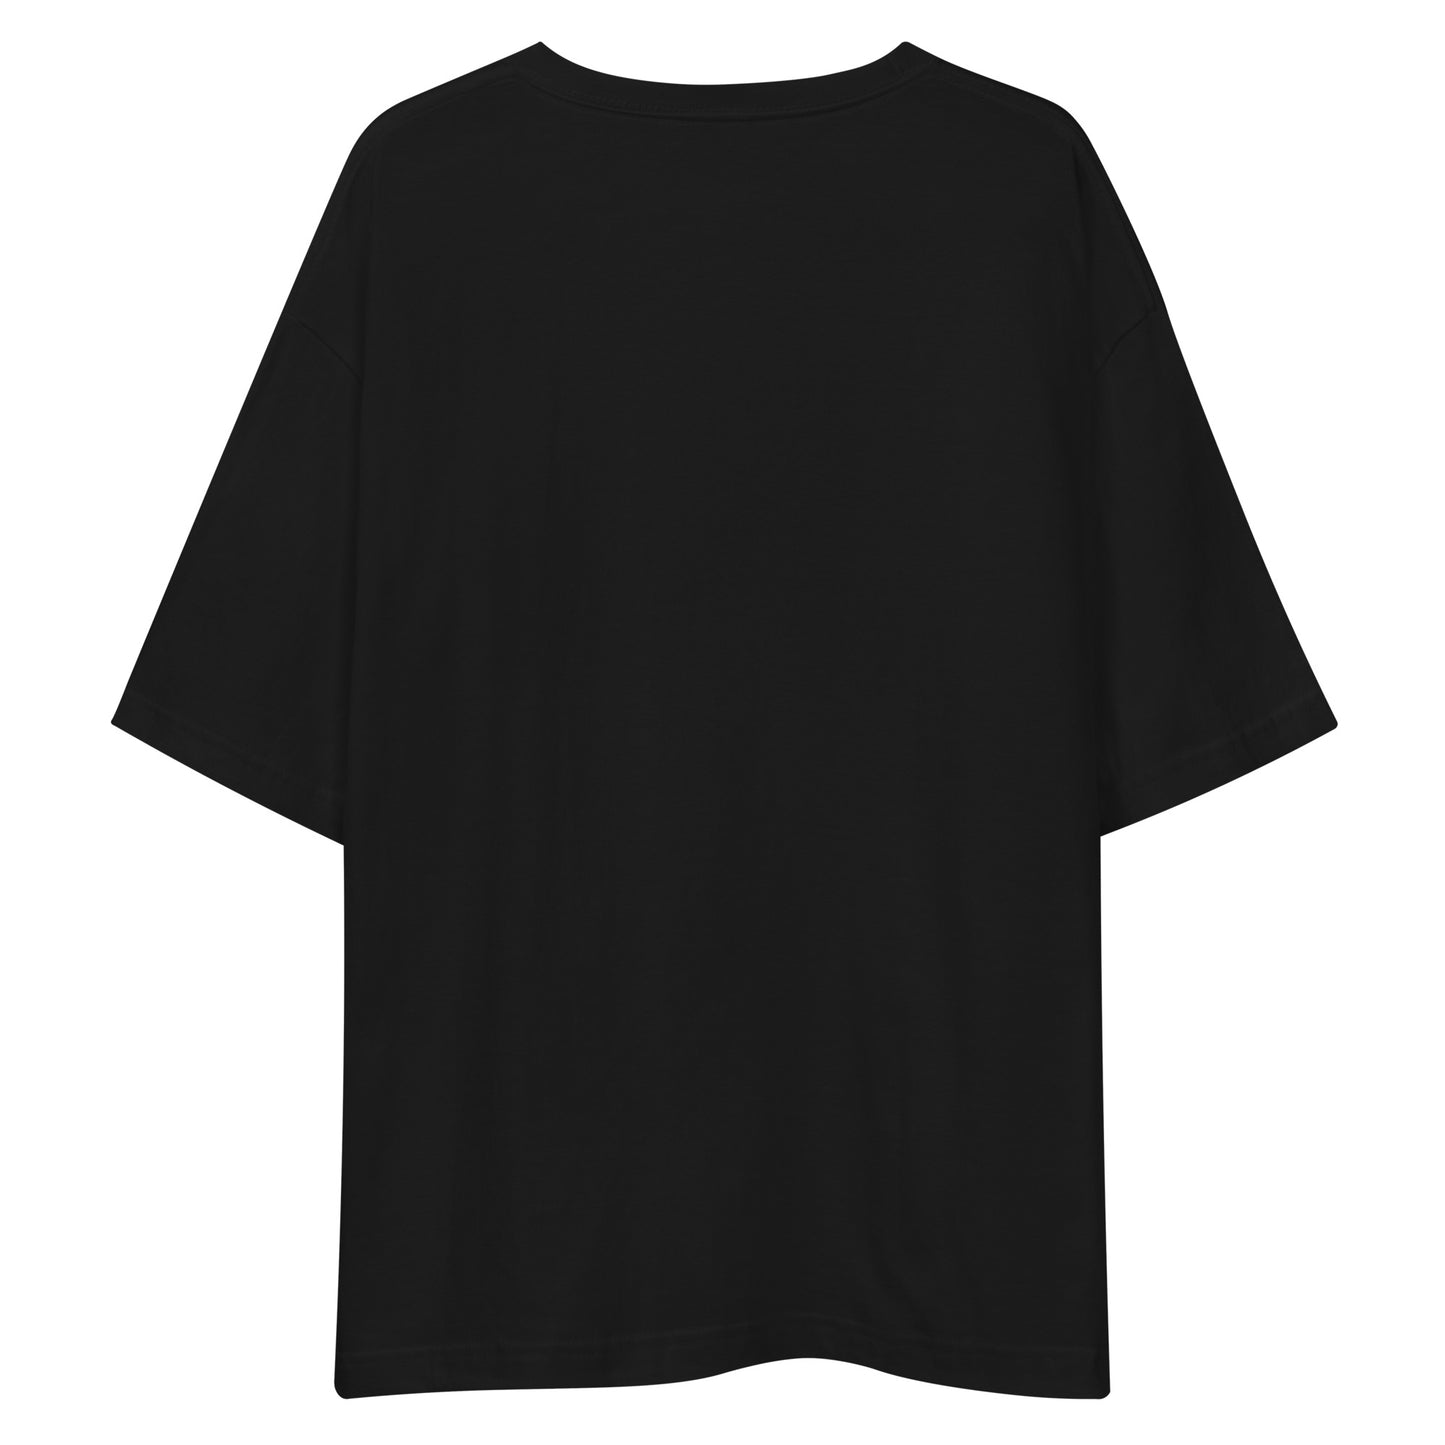 H200 - เสื้อยืด/ภาพเงาใหญ่ (การล่าสัตว์ : สีดำ)